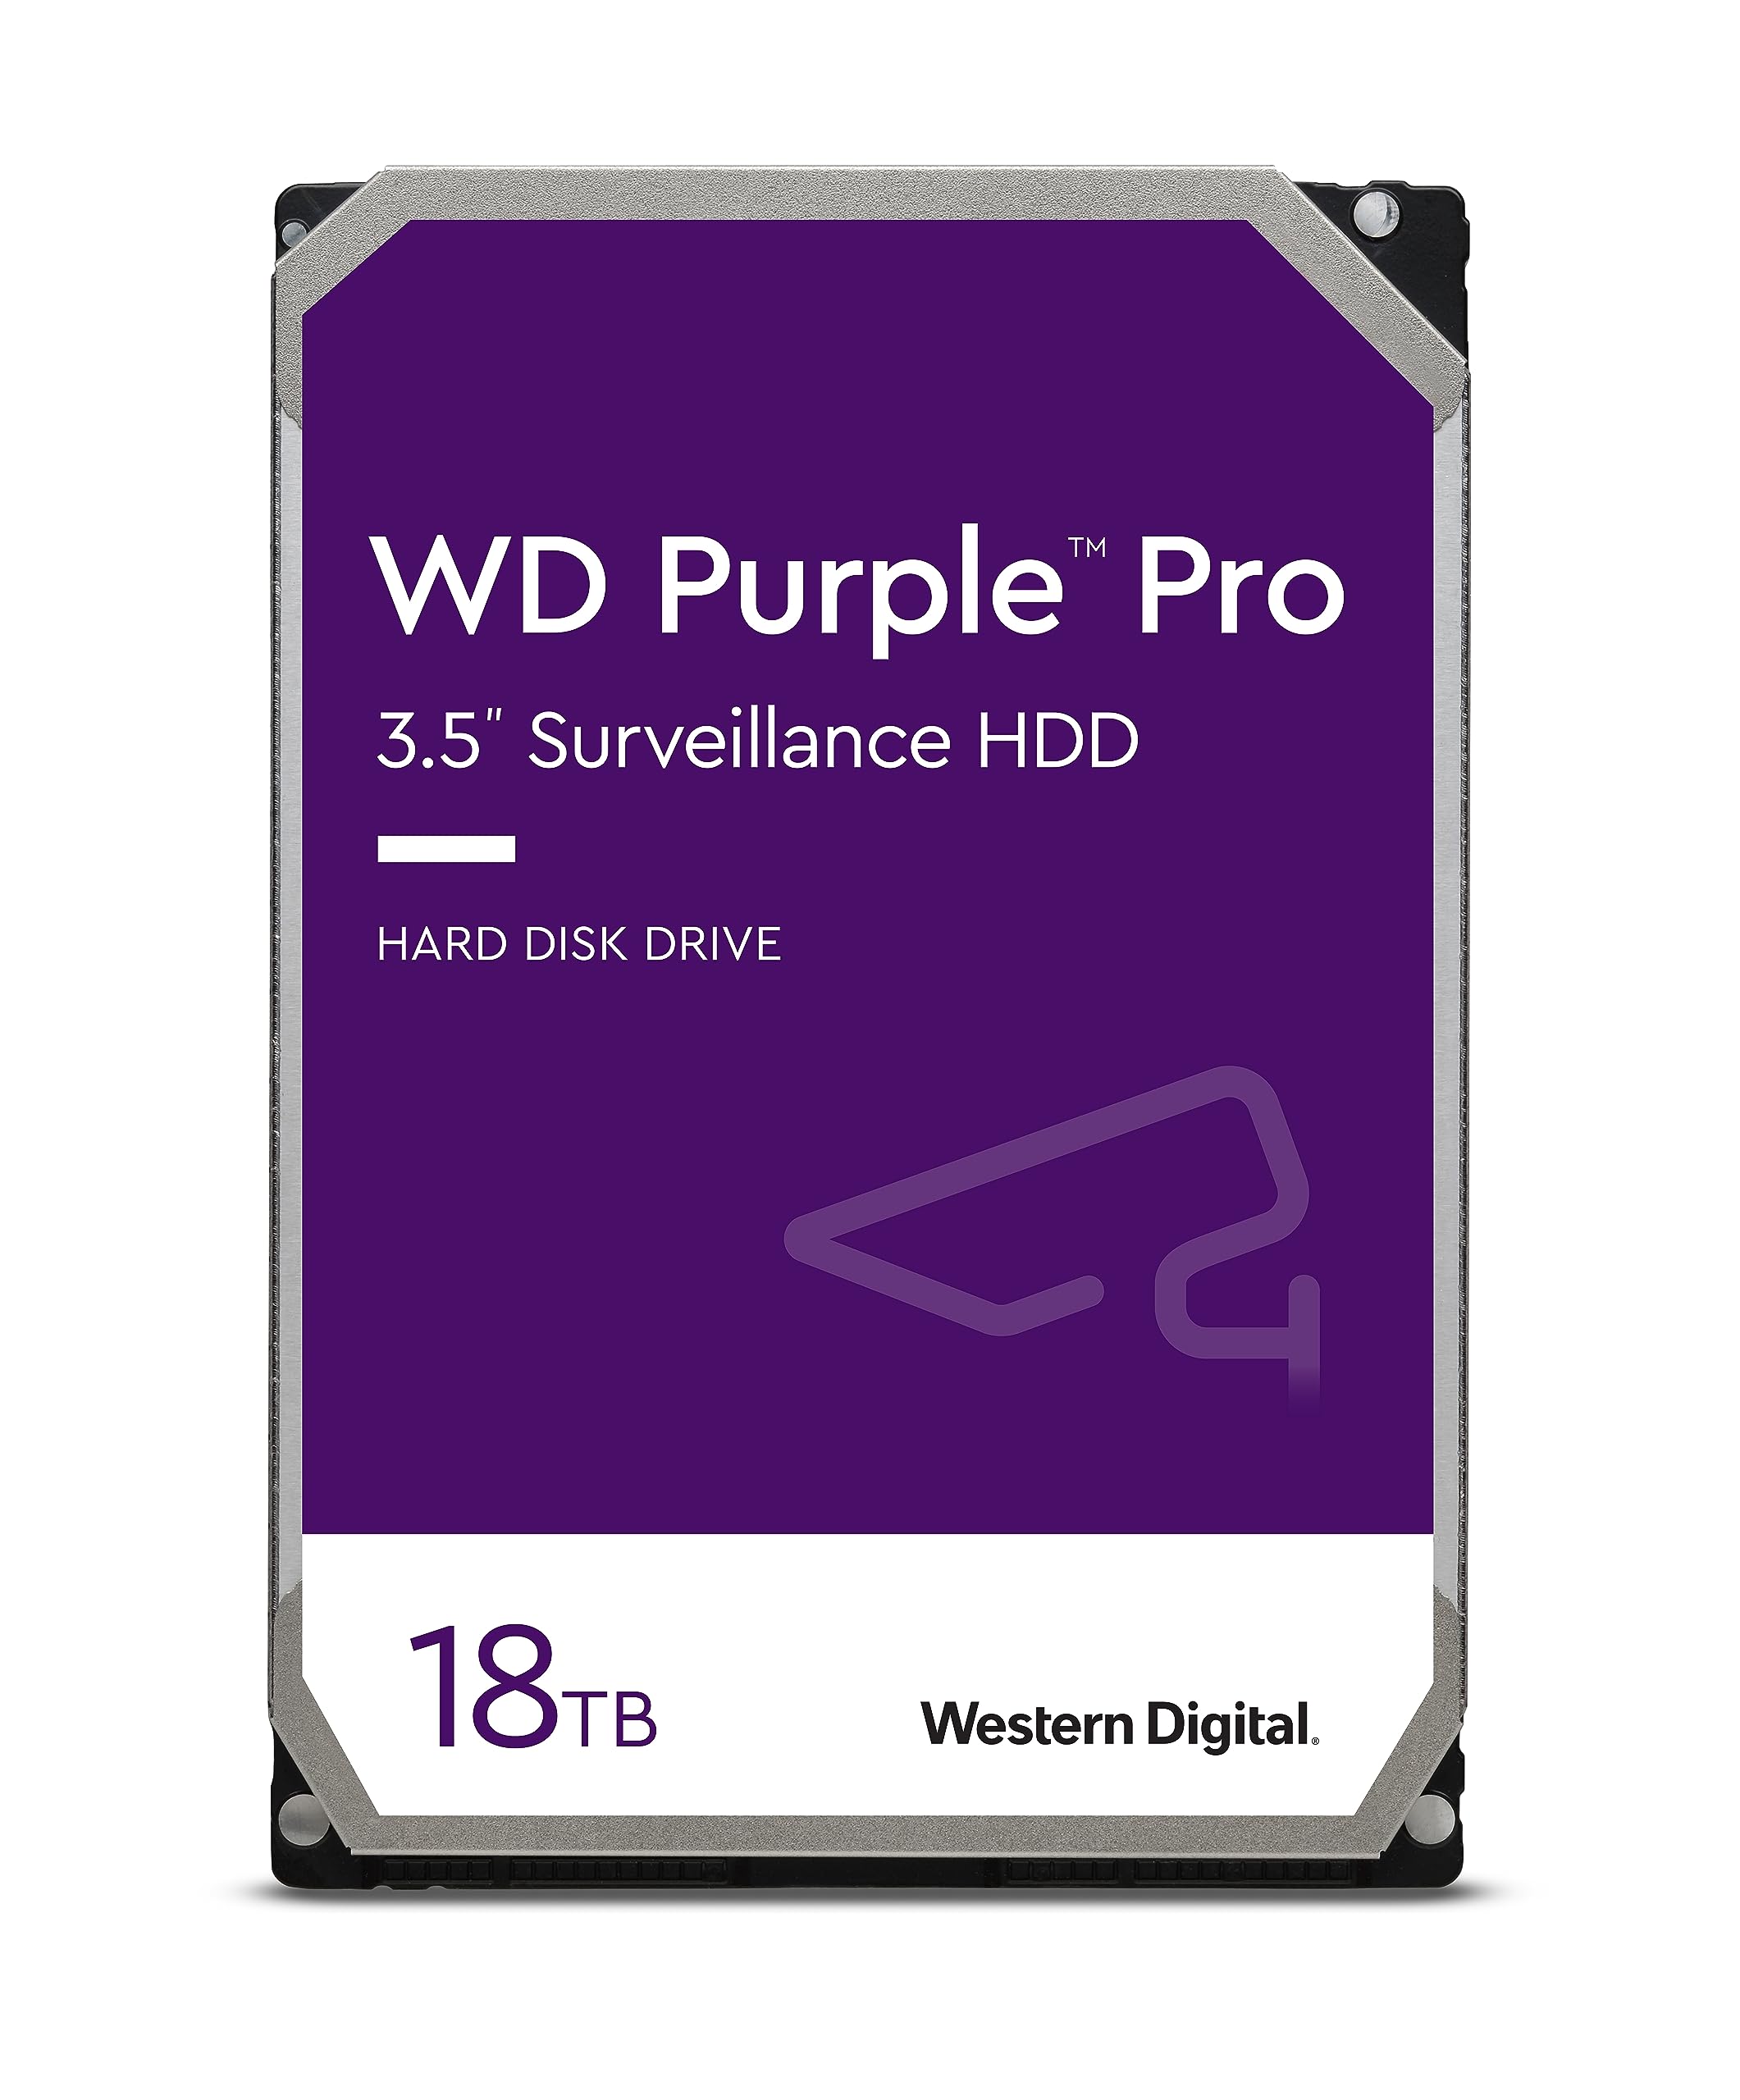 Western Digital 18TB WD Purple Pro Surveillance Internal Hard Drive HDD - SATA 6 Gb/s, 512 MB Cache, 3.5" - WD181PURP